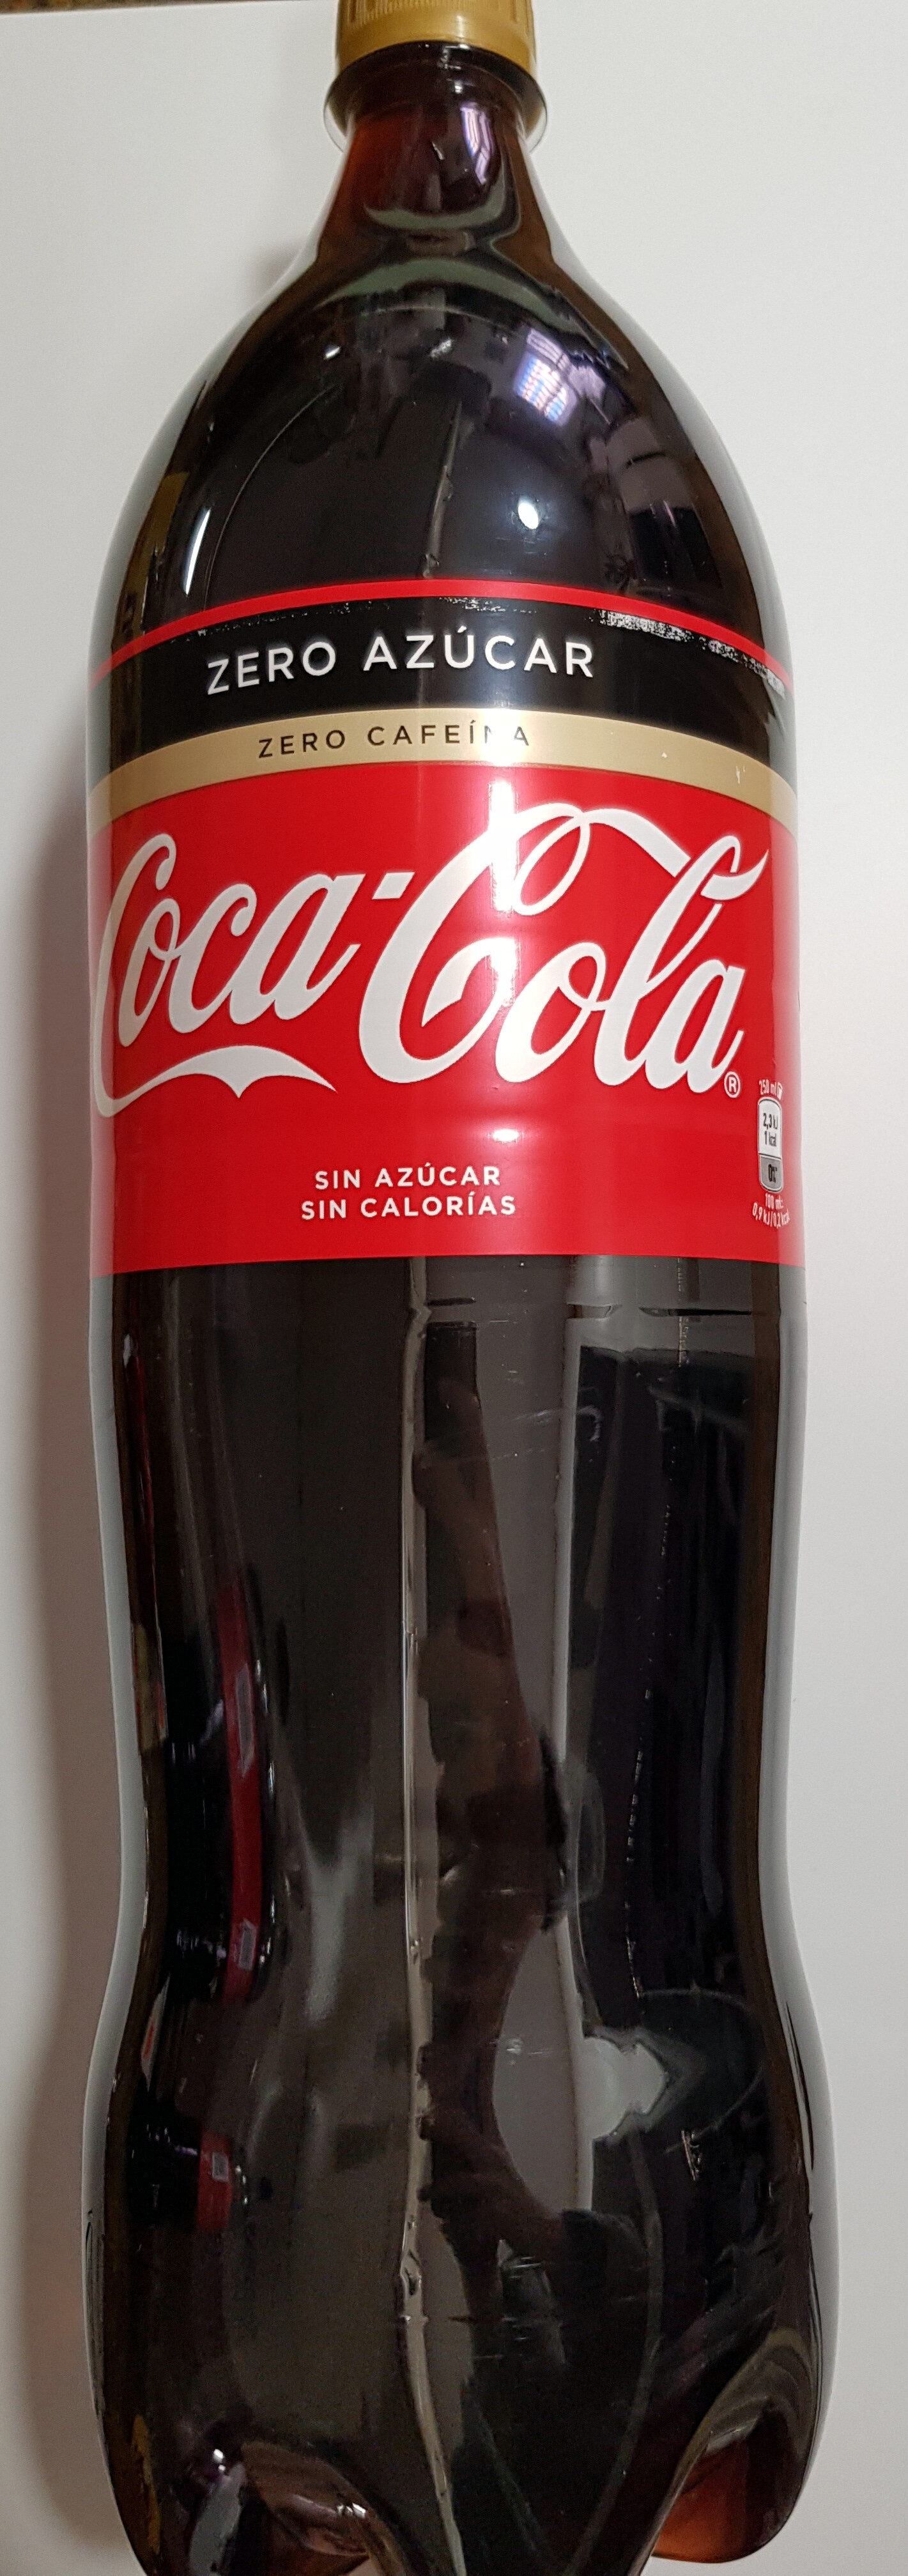 Coca-Cola Zero azúcar Zero cafeína - Produit - es